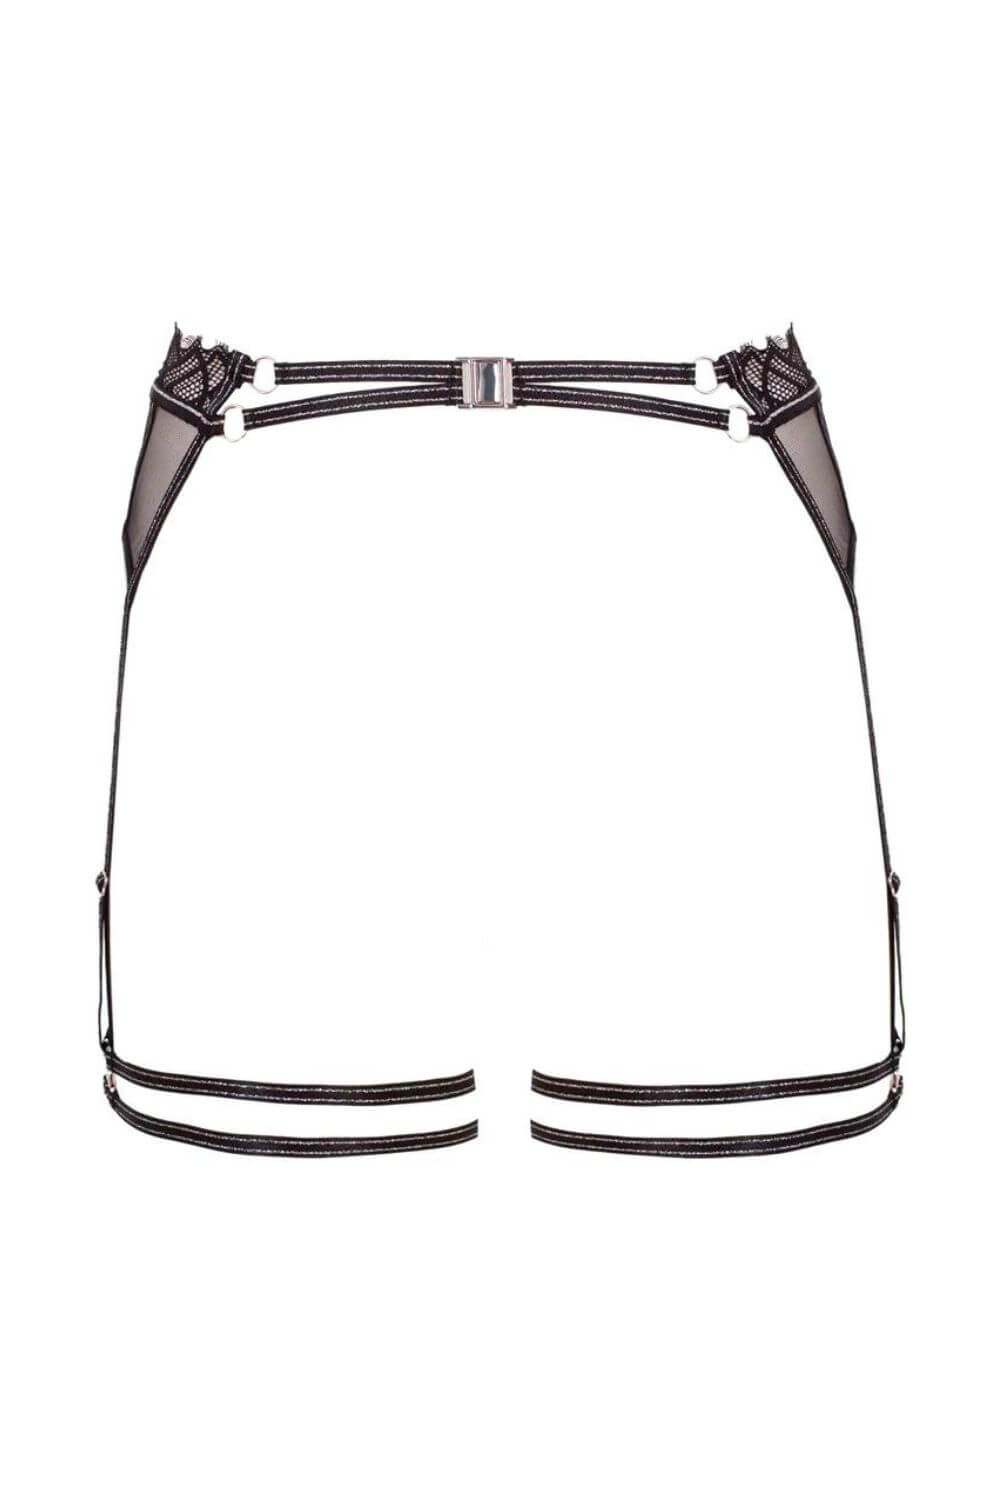 Manhattan Luxe Sheer Harness Garter Belt-Bracli-Rebel Romance